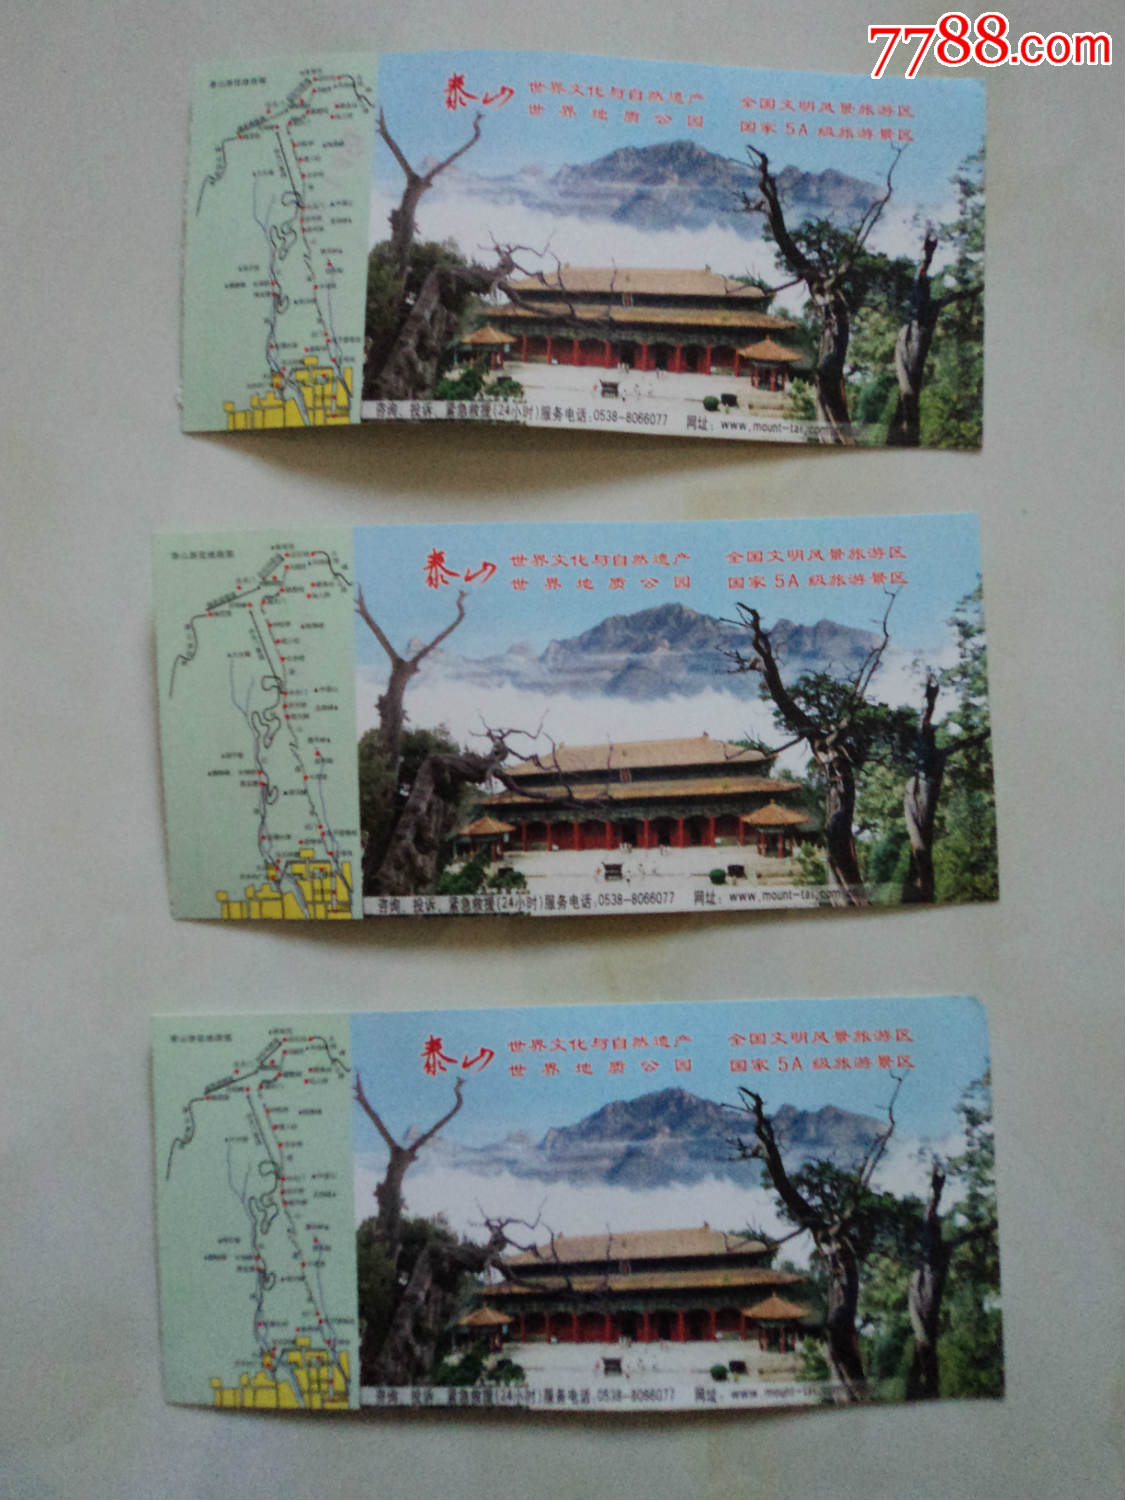 上海辰山植物園門票價格_大覺山漂流門票價格_千佛山門票價格